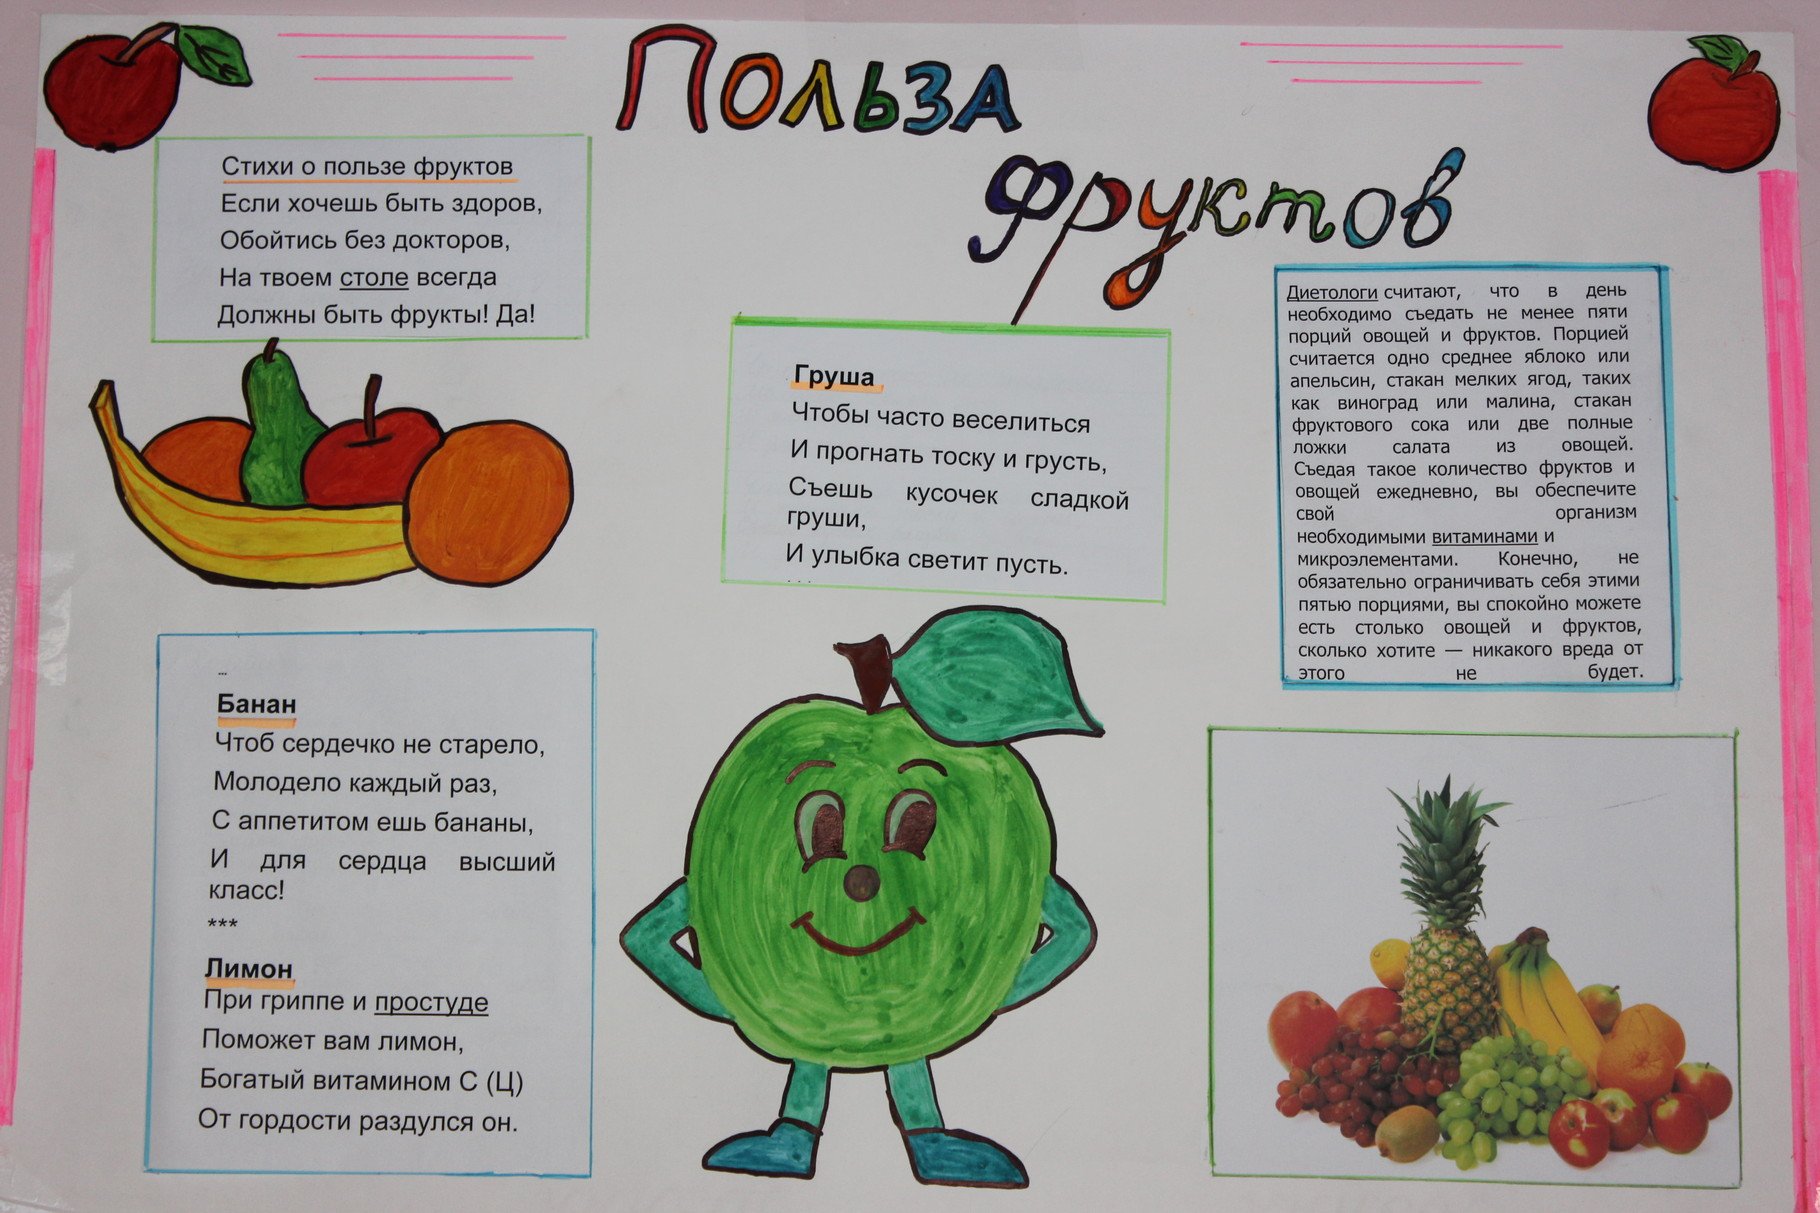 Плакат здорового питания овощи и фрукты